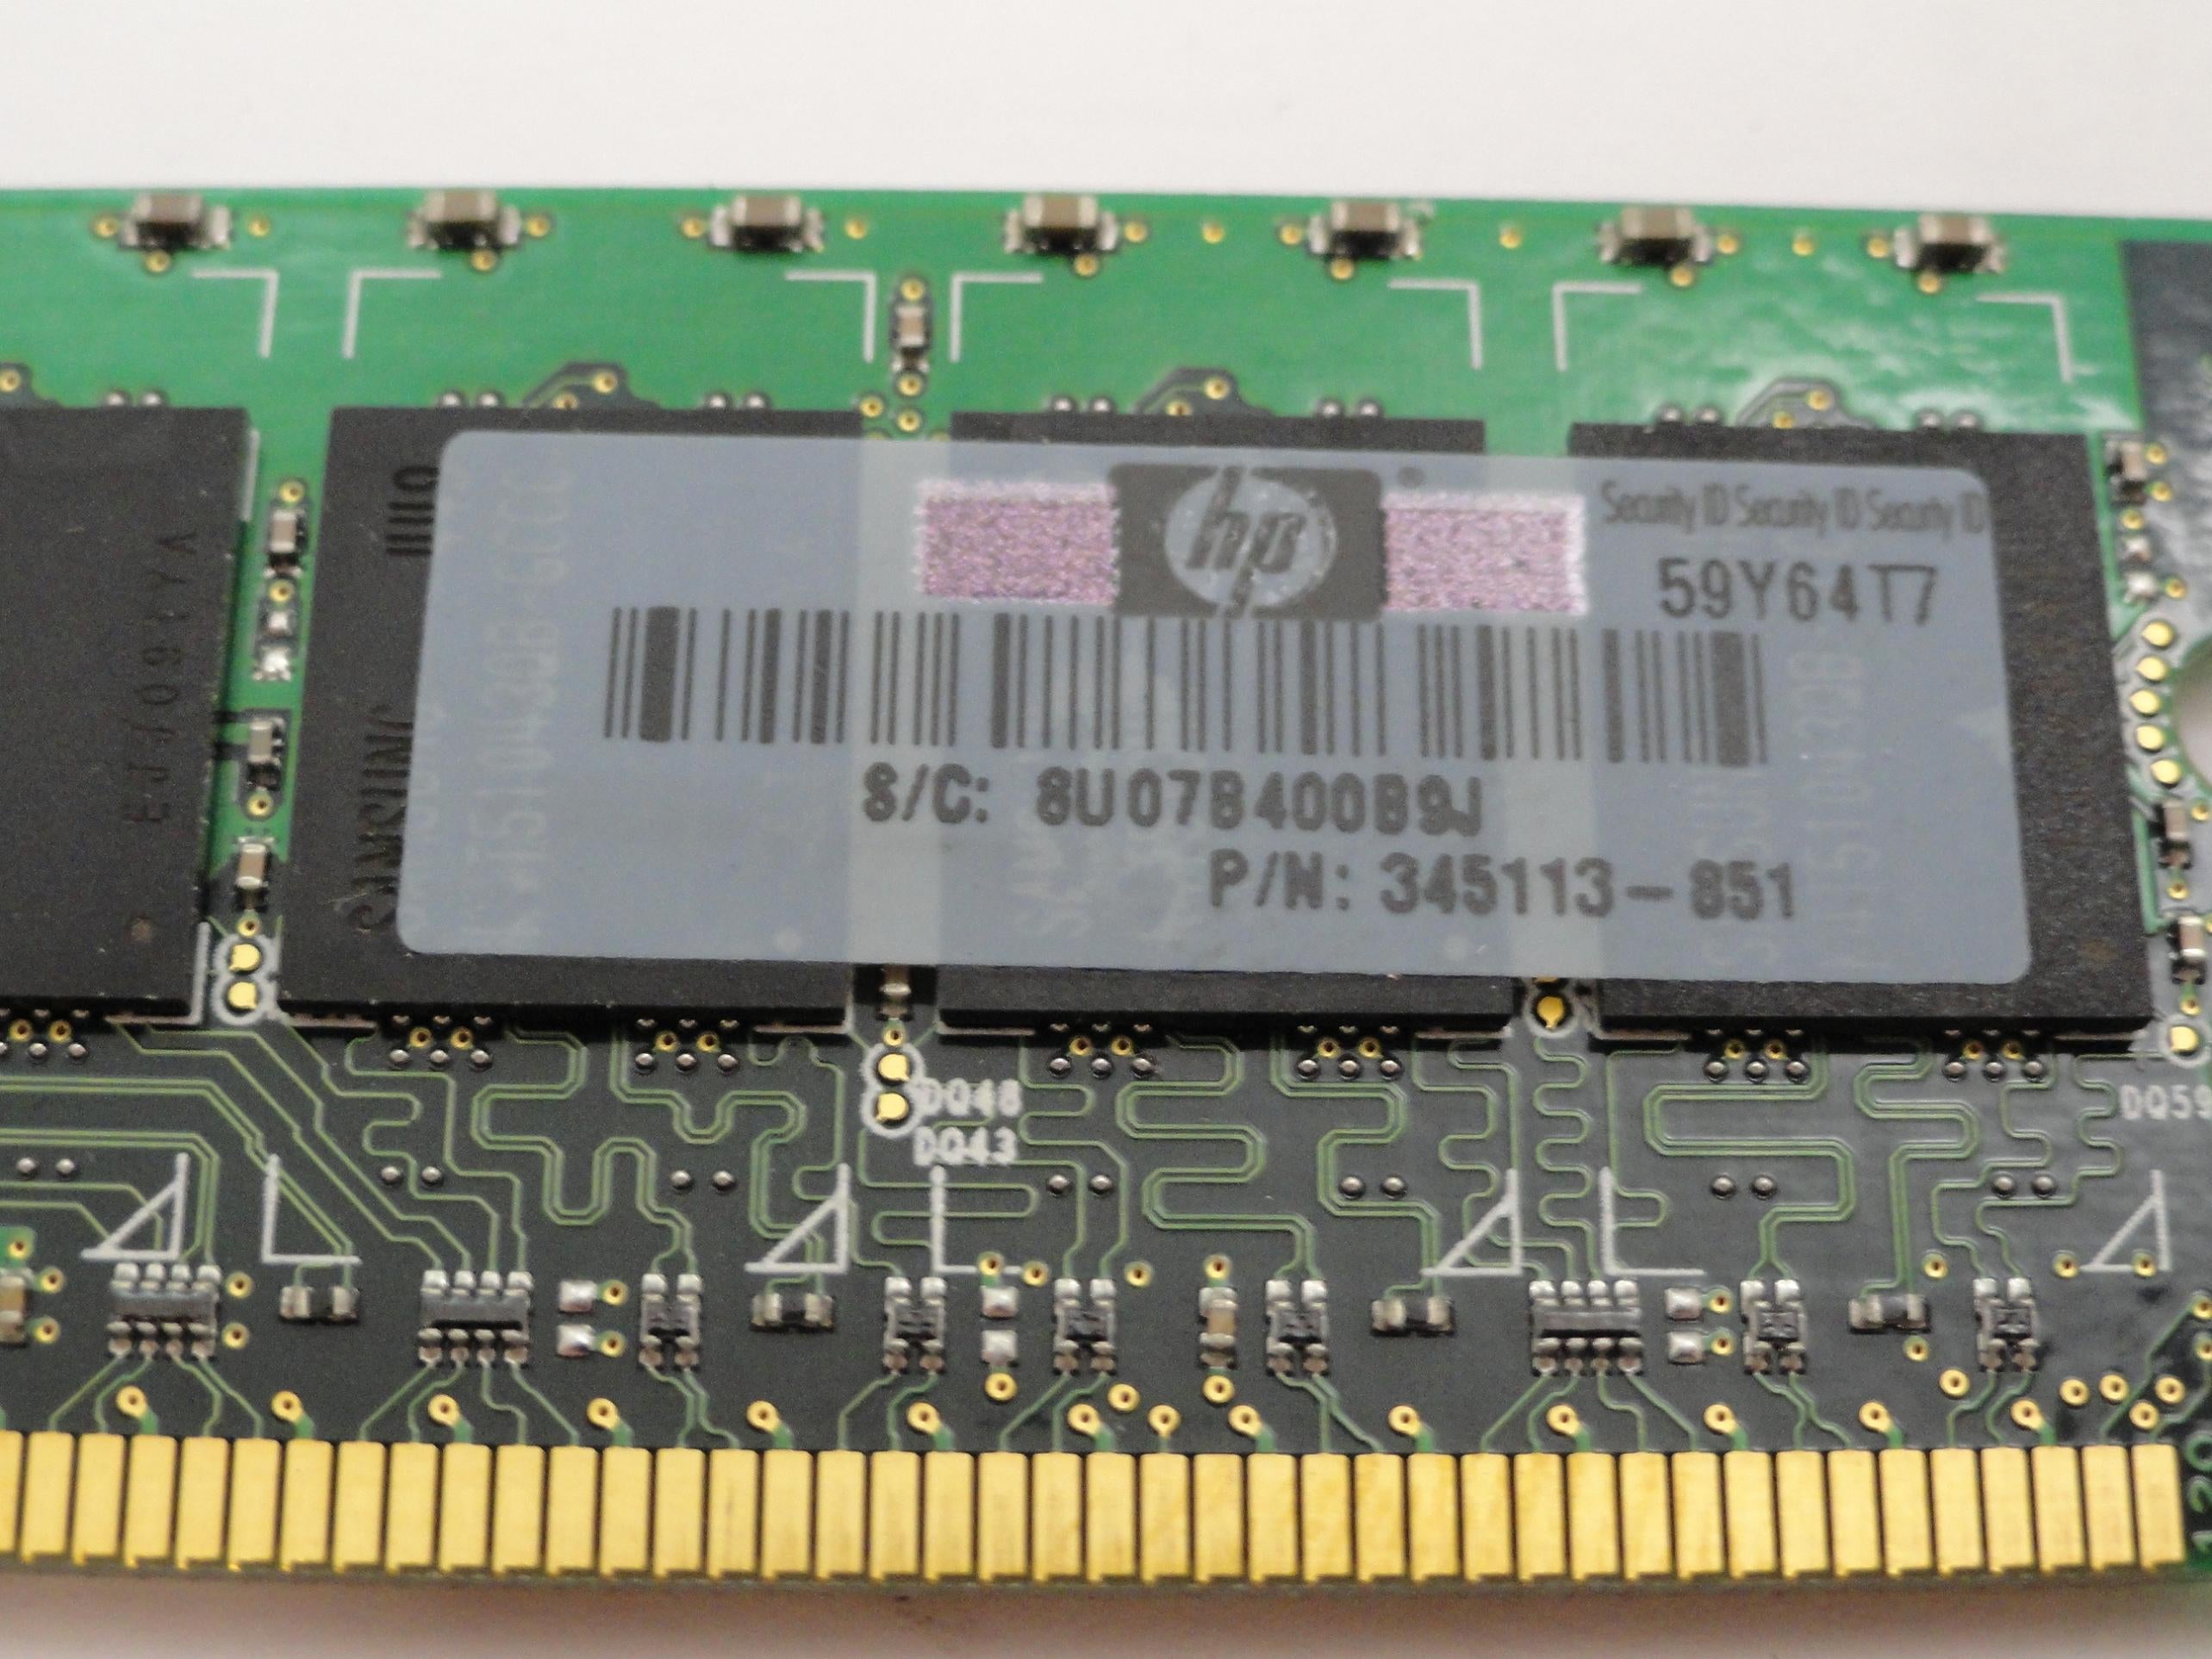 PR17596_M393T2950BG0-CCCQ0_Samsung 1GB PC2-3200 ECC Registered DIMM - Image2